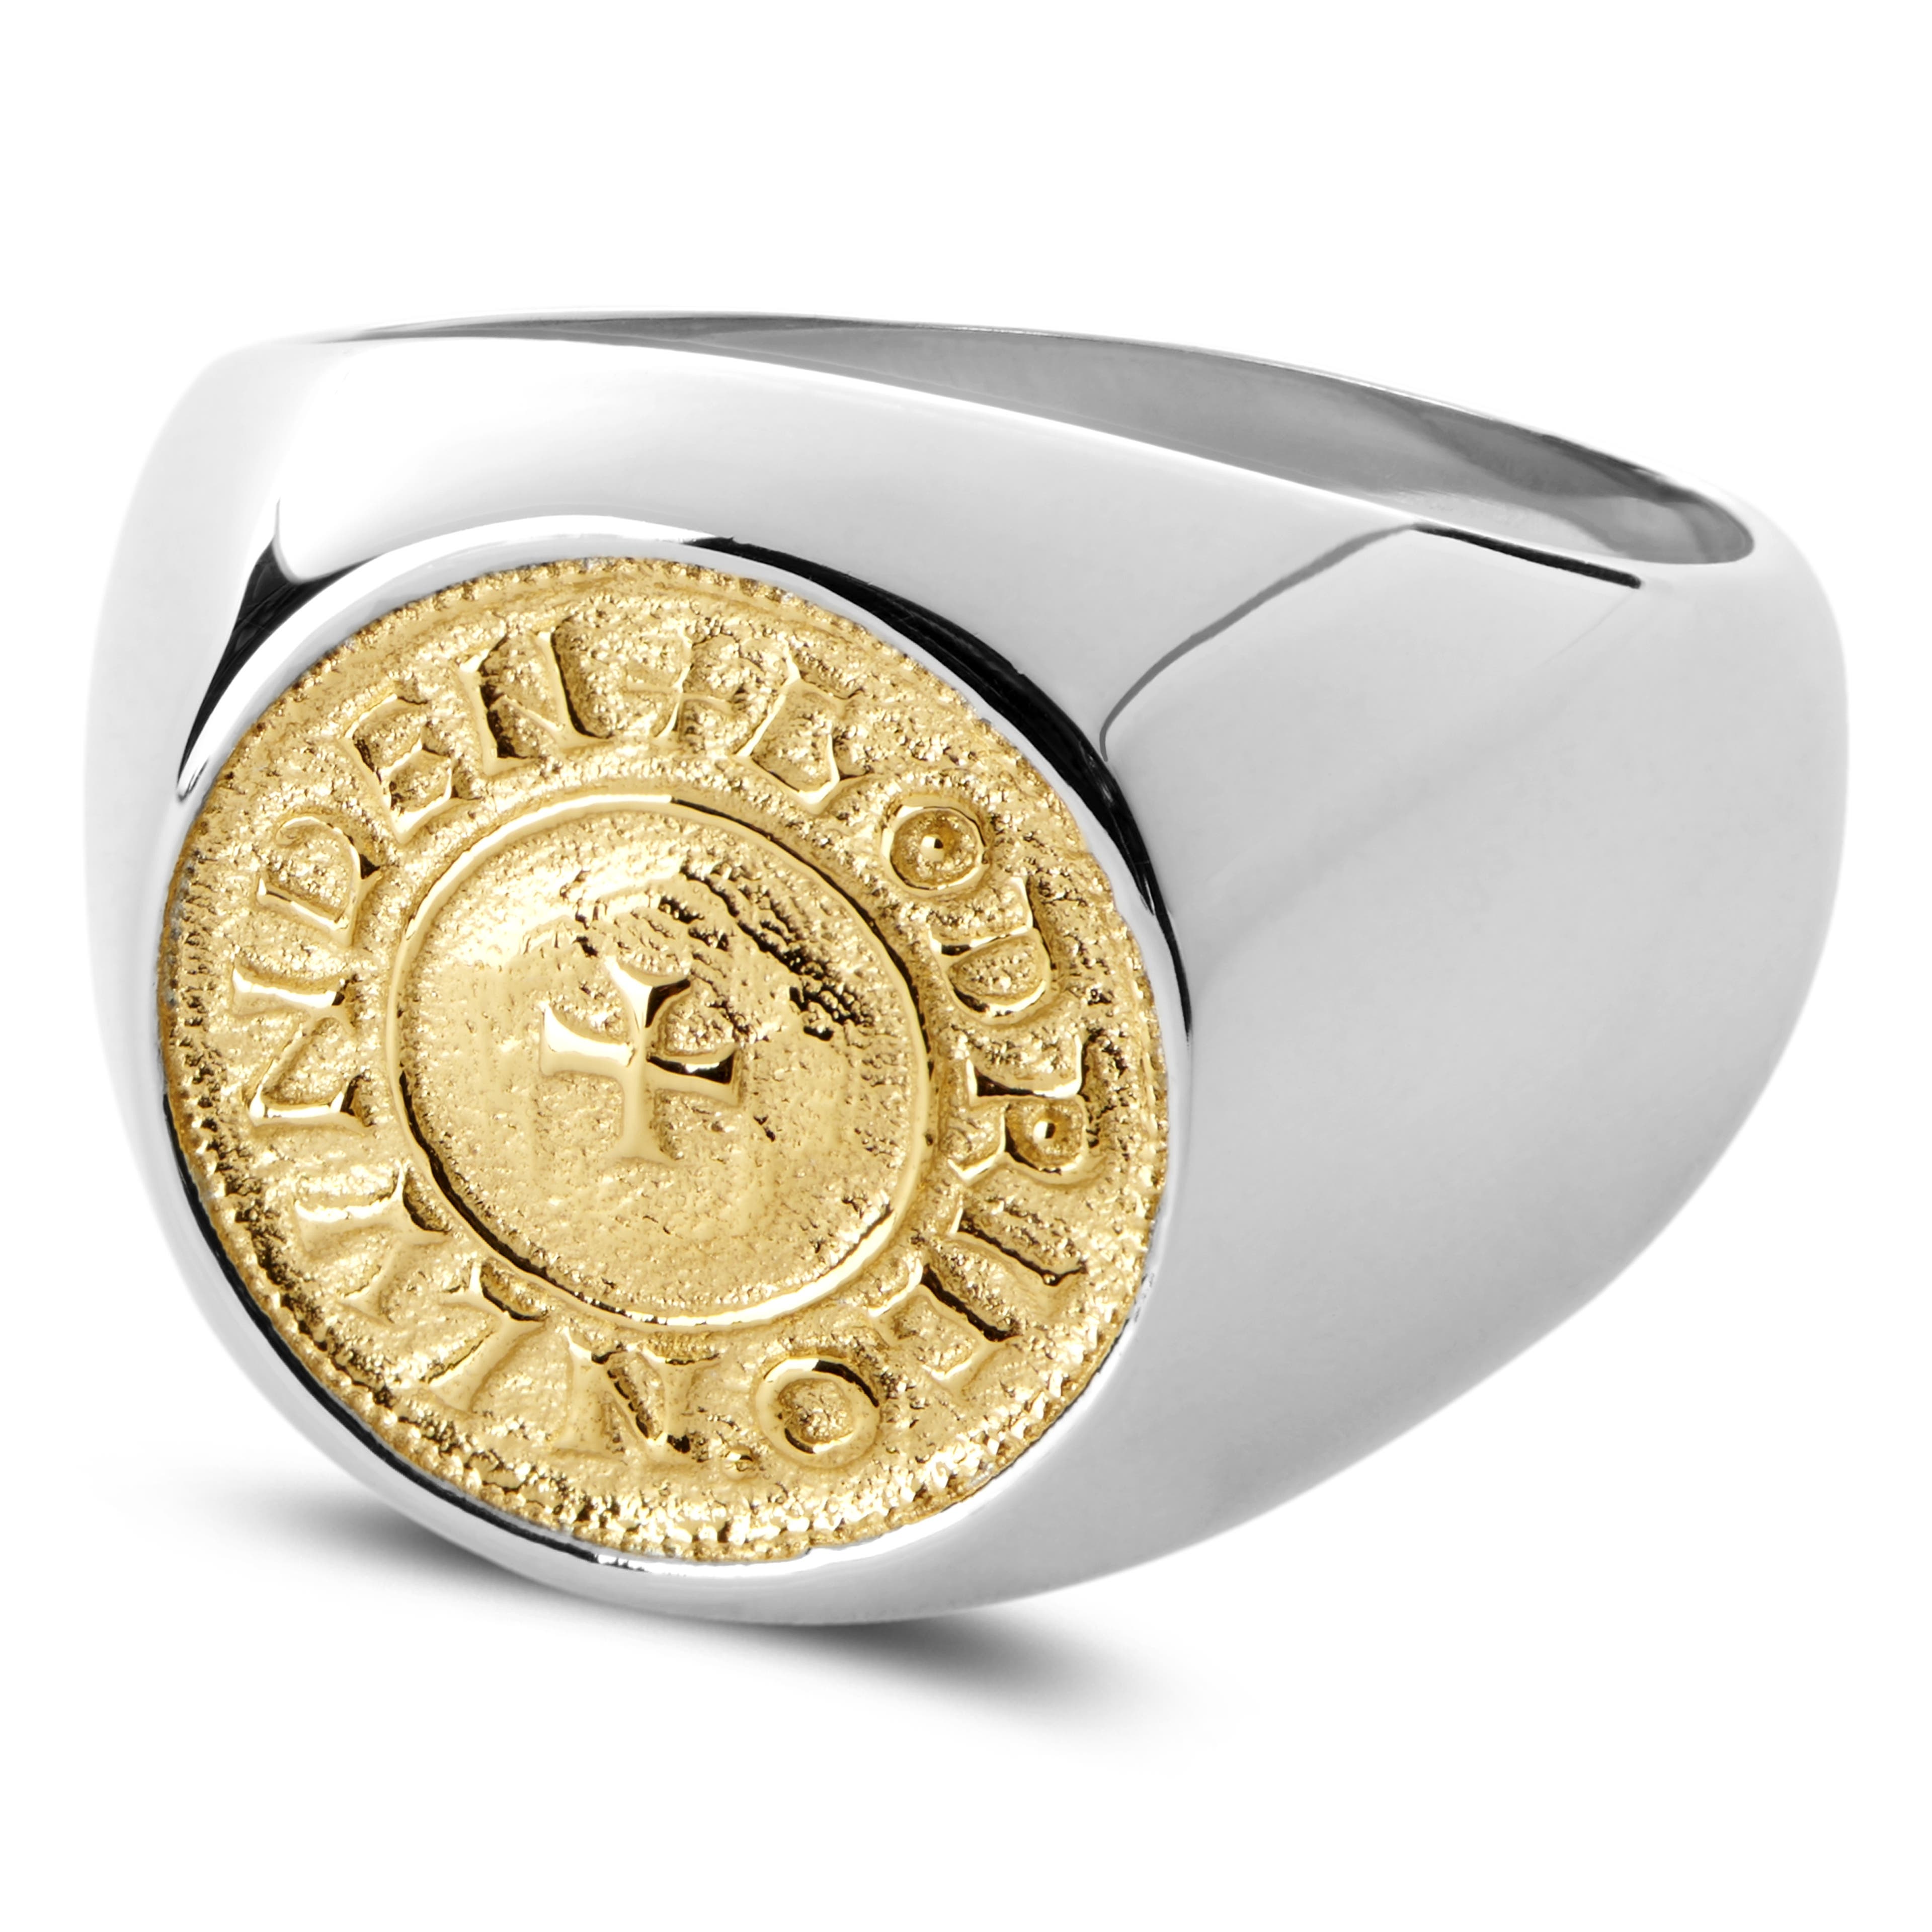 Lonya ezüst- és arany tónusú pecsétgyűrű